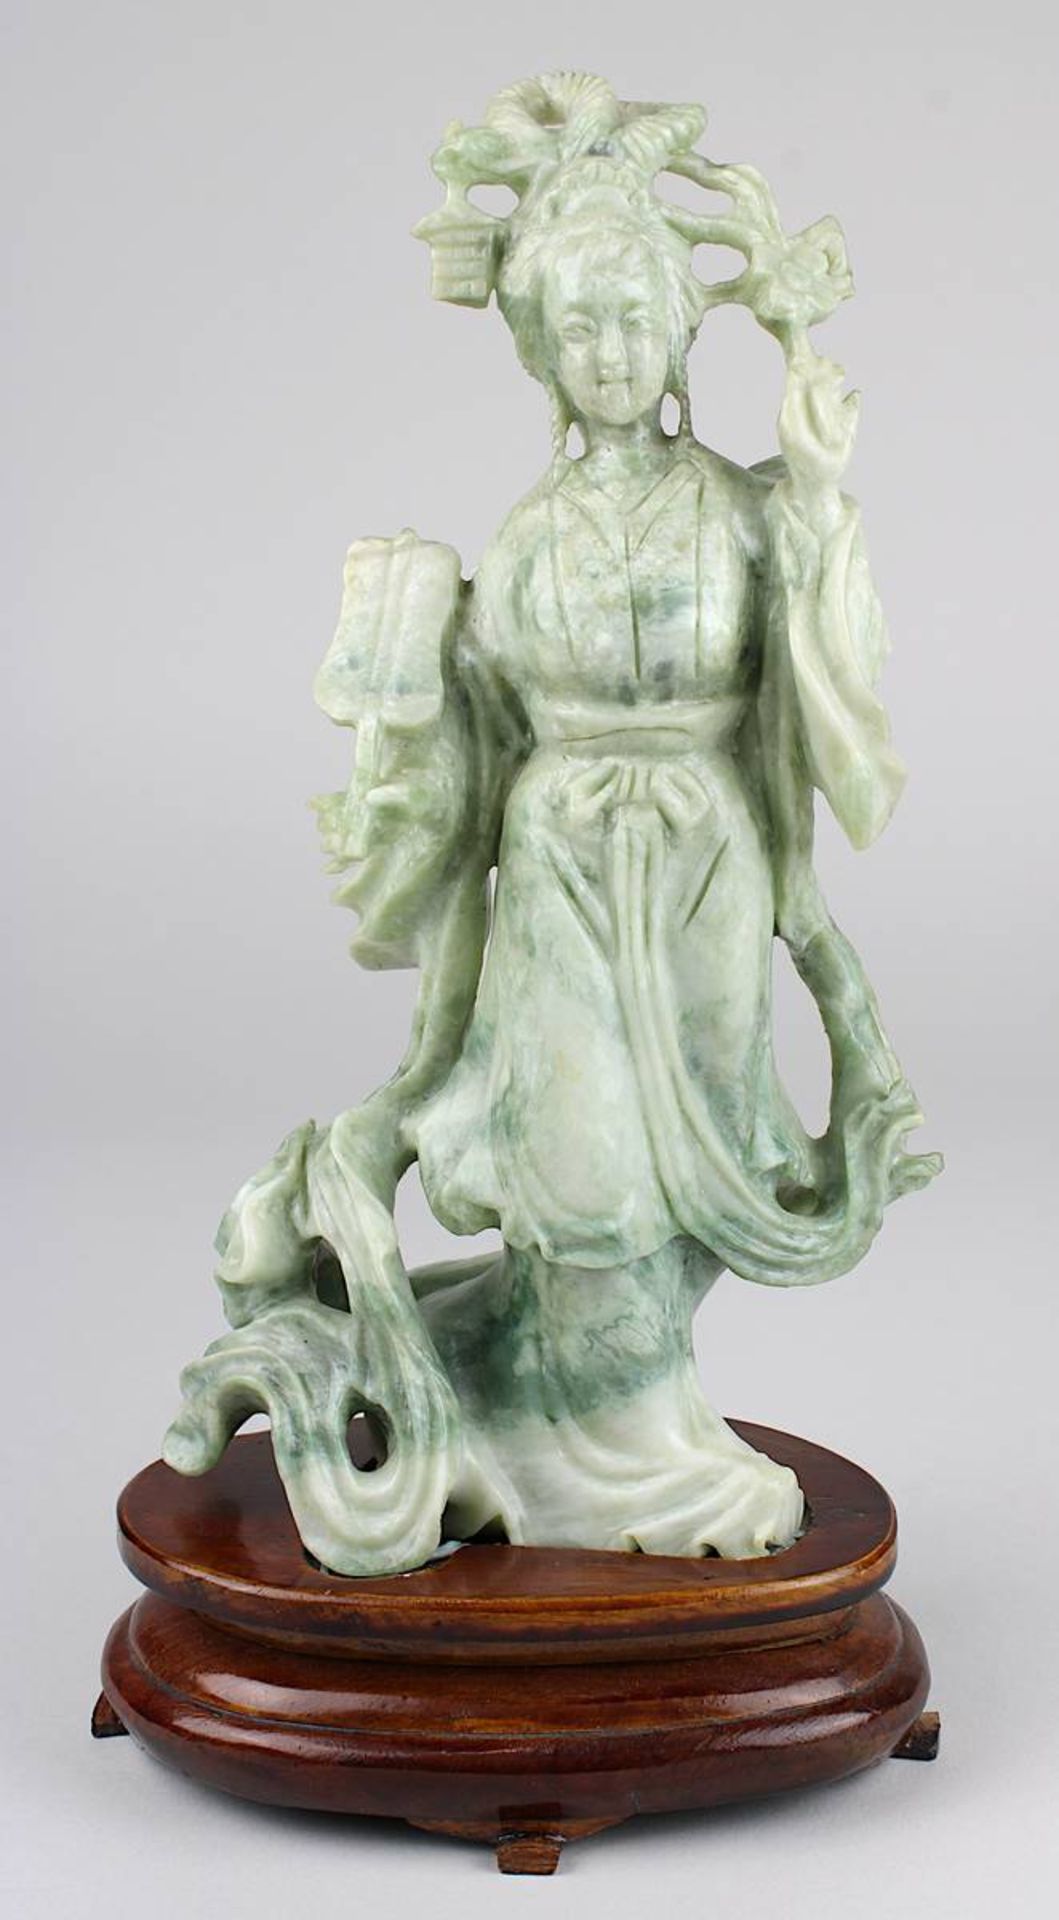 Chinesische Figur einer Dame mit Fächer, grünweiß marmorierter Stein aus einem Stück geschnitzt, auf